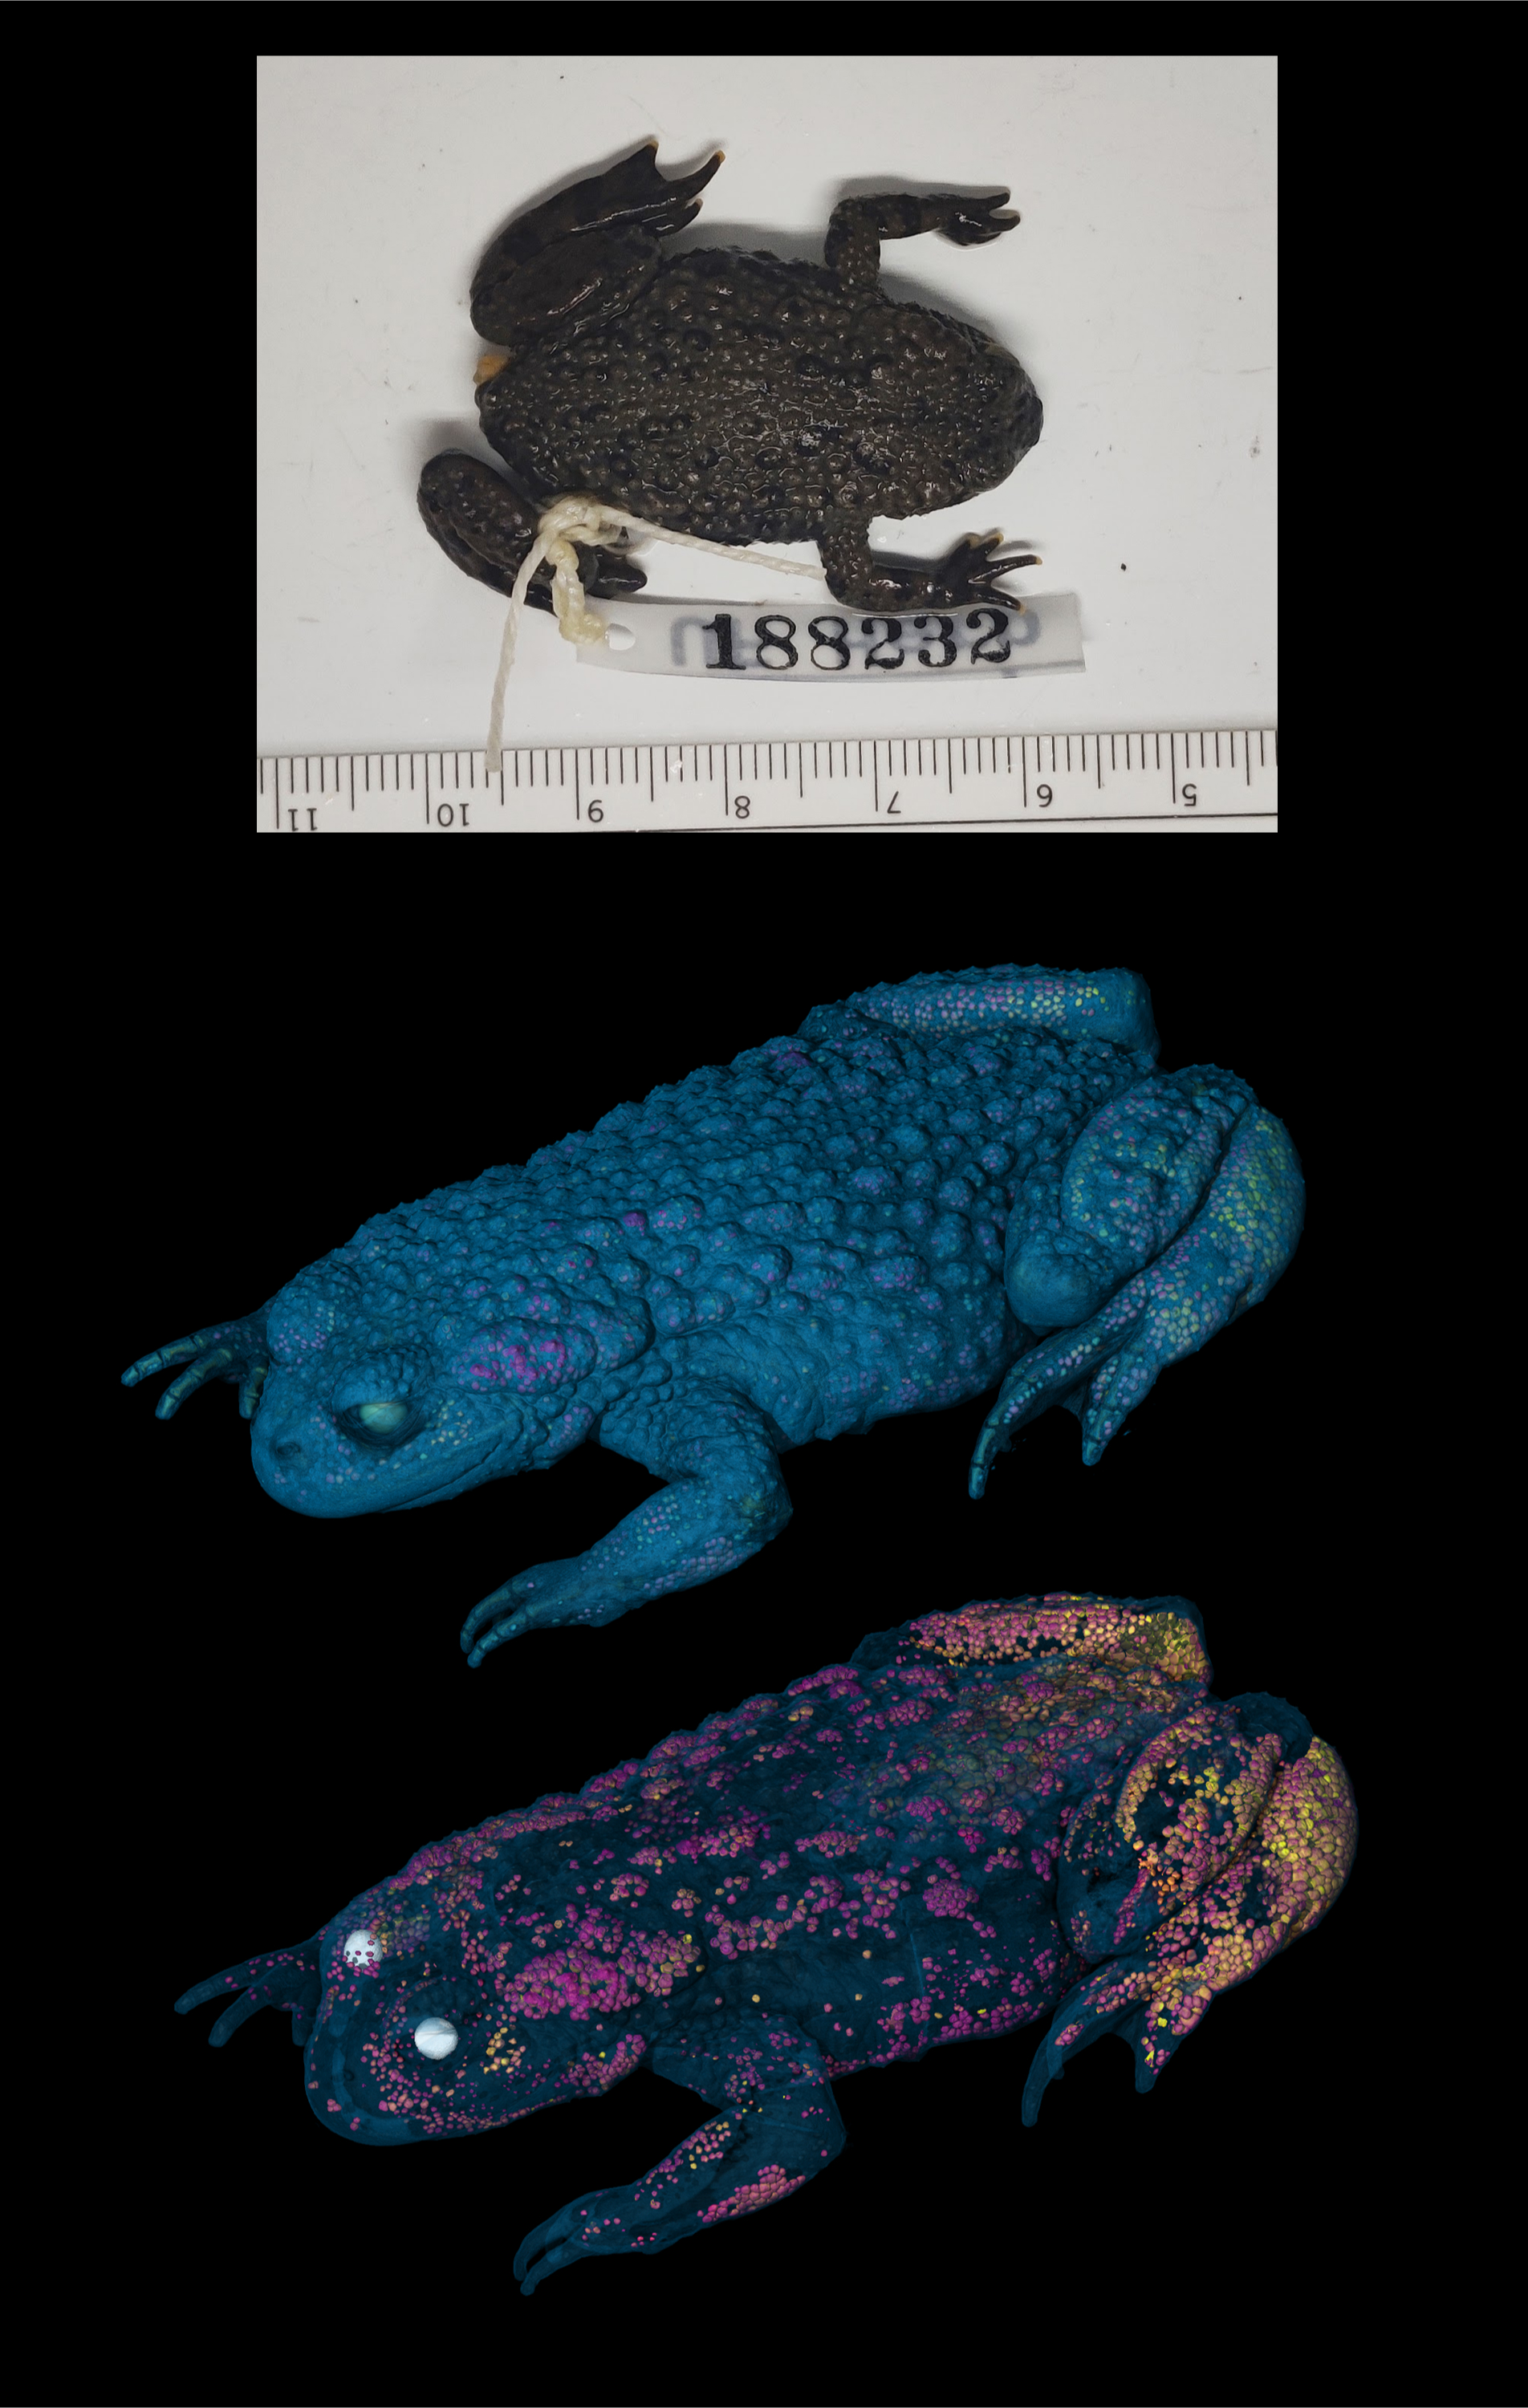 КТ восточной огнебрюхой жабы, показывающая минерализацию кожи с фотографией образца в качестве верхнего изображения.